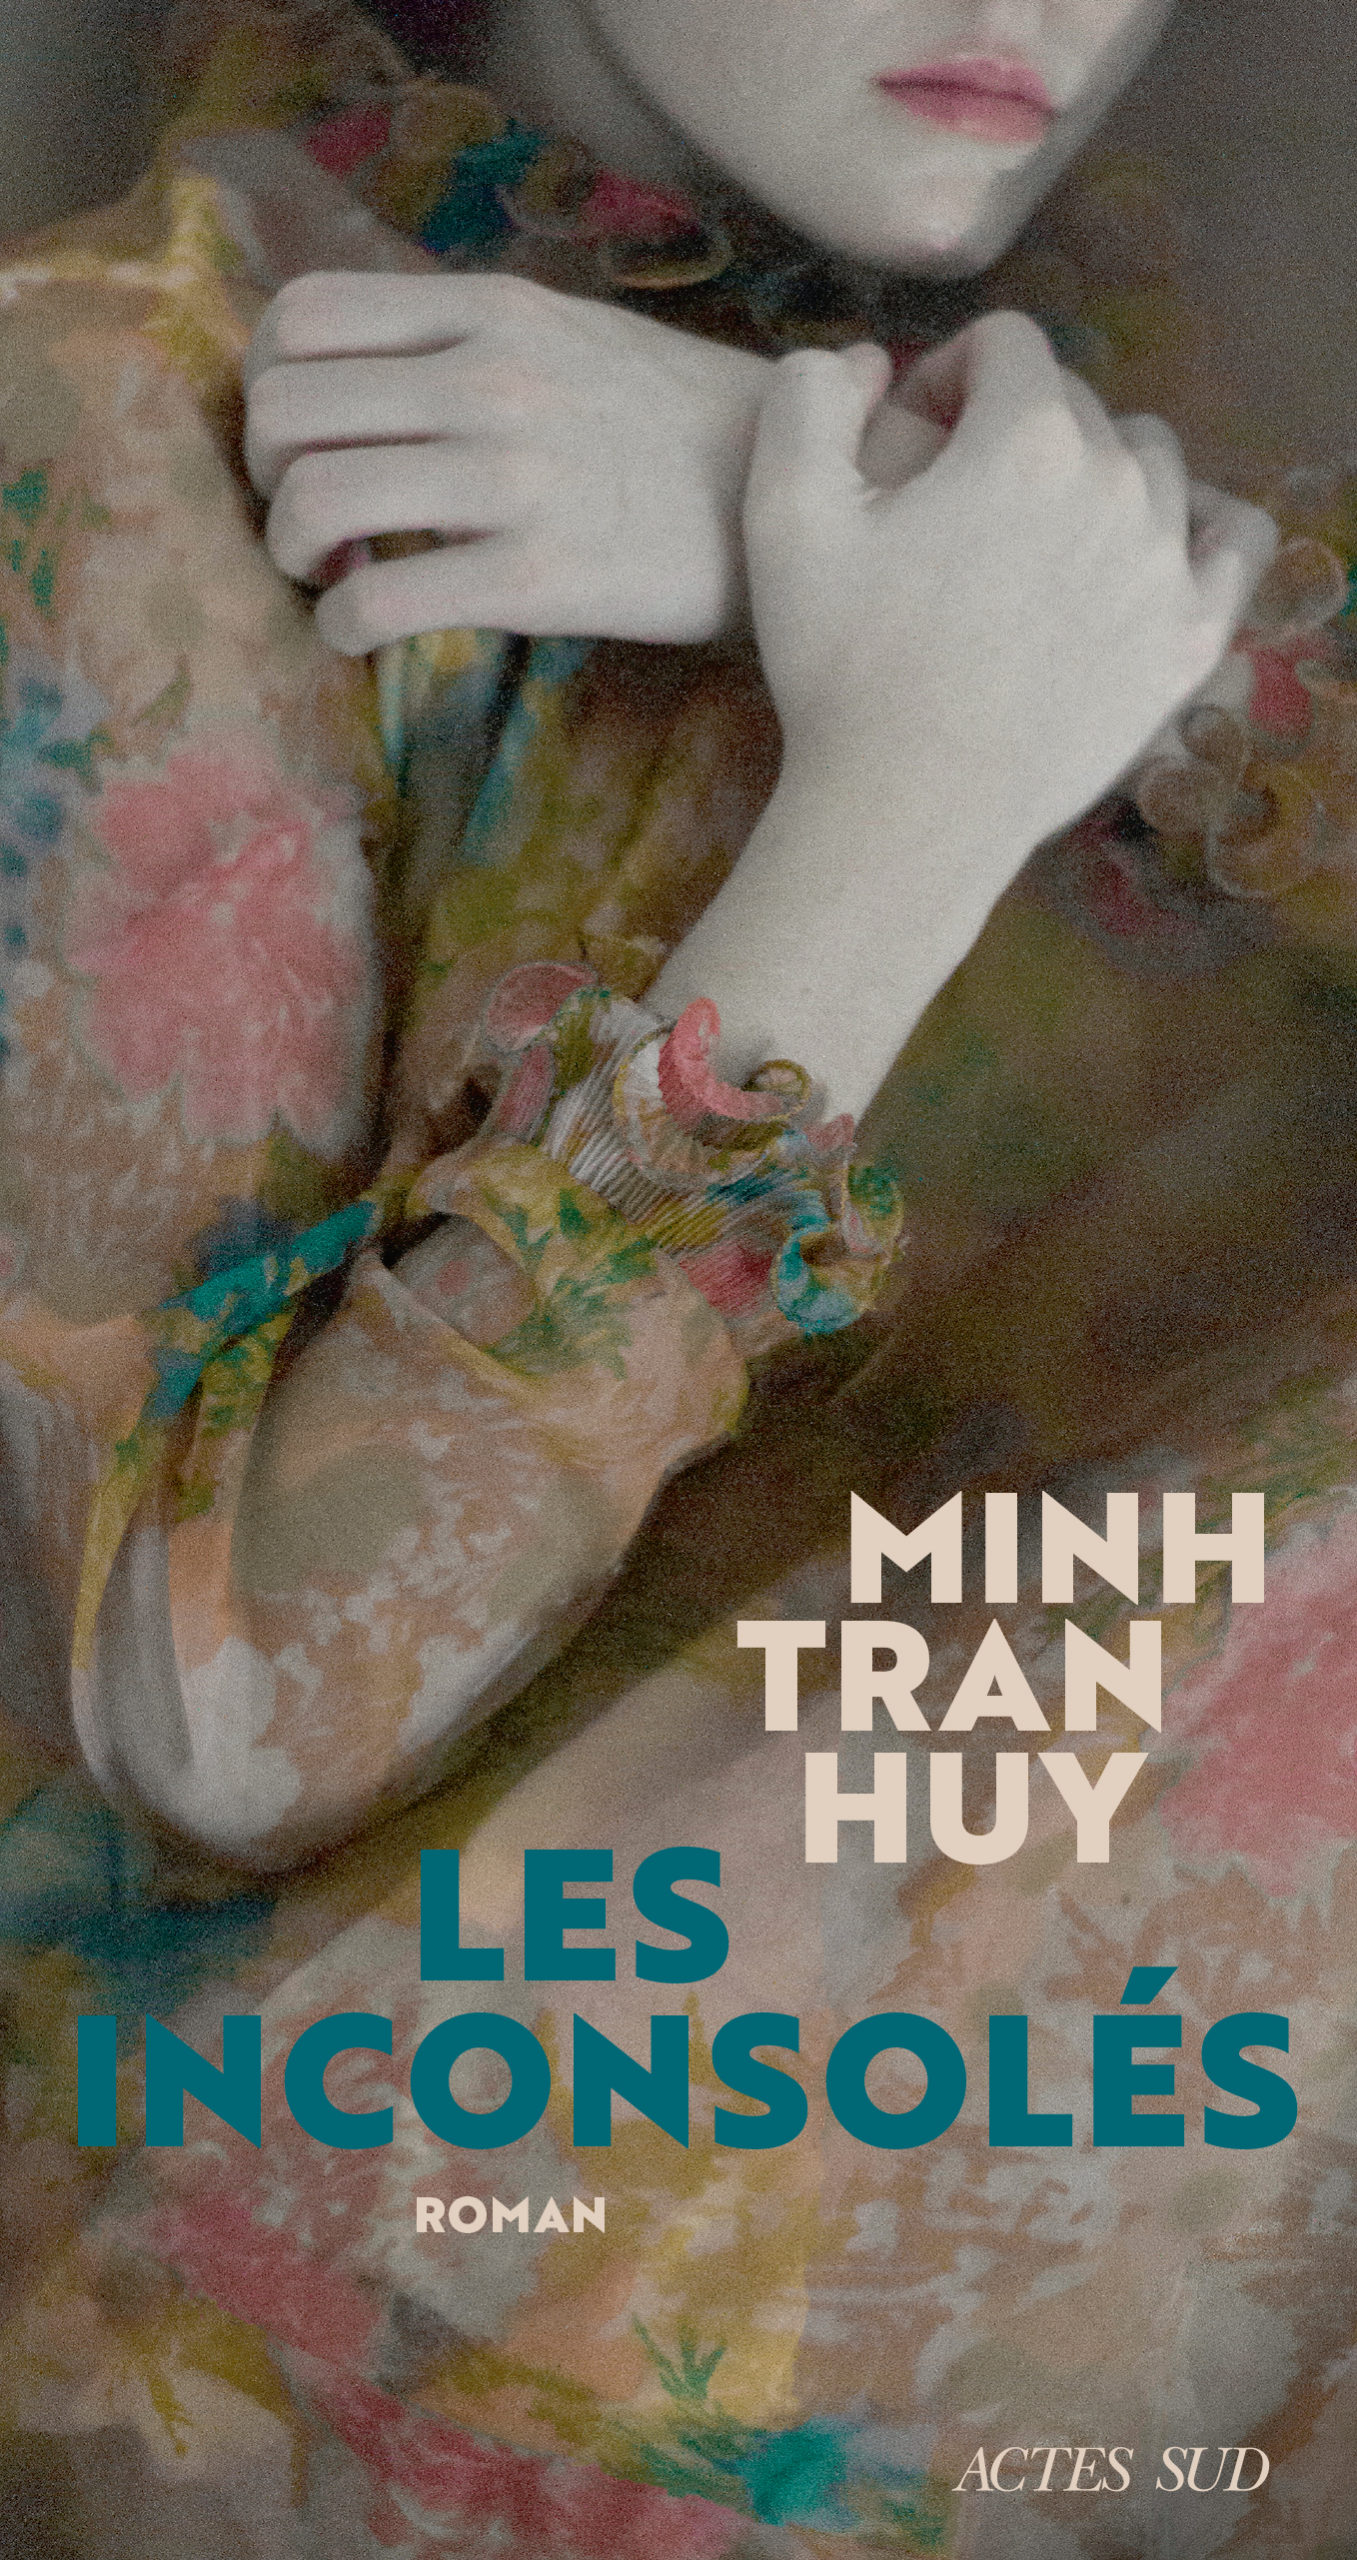 Les inconsolés de Minh Tran Huy sort chez Actes Sud.